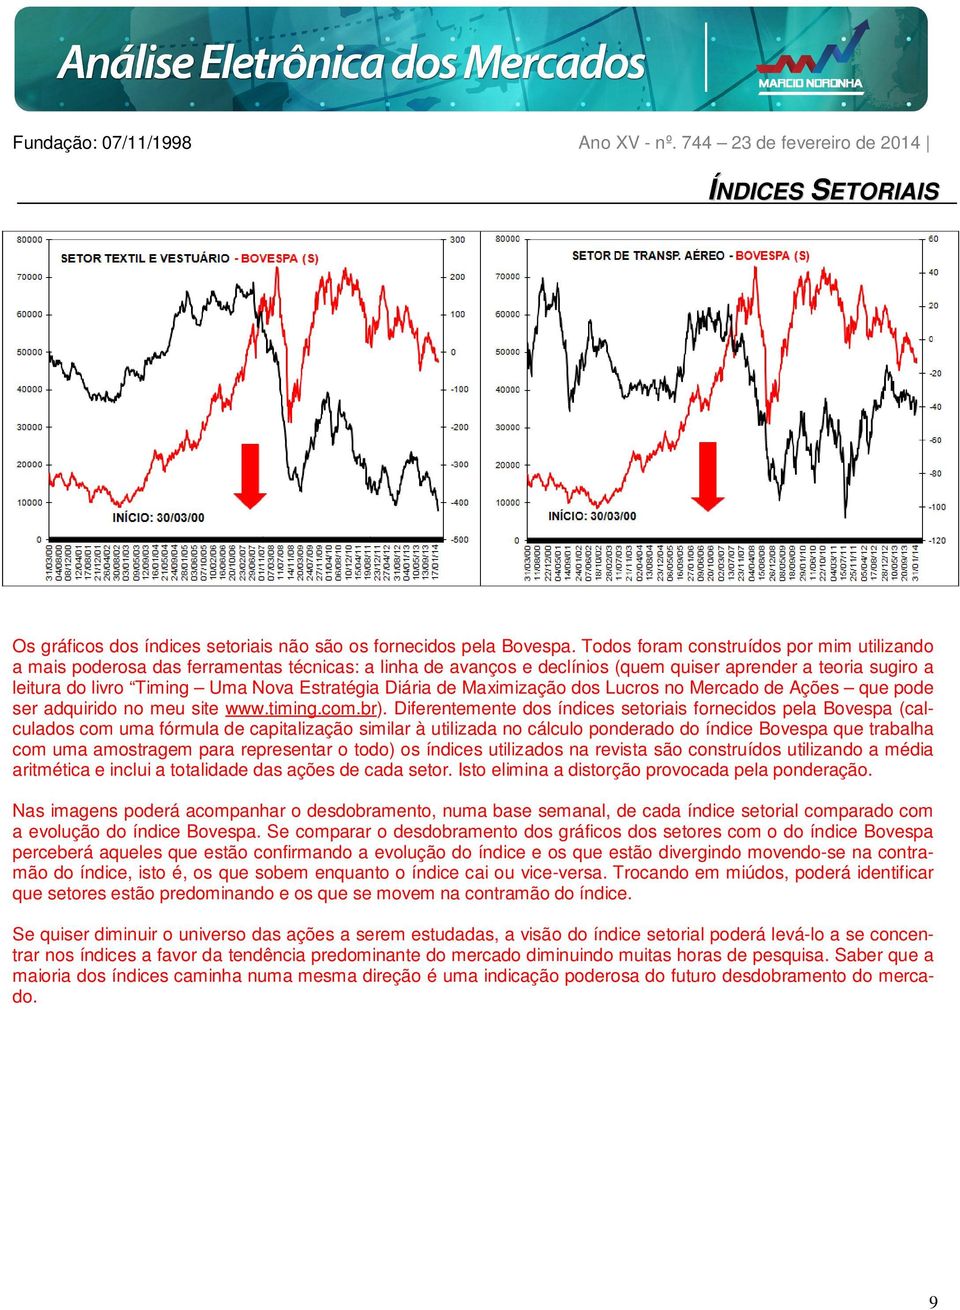 Diária de Maximização dos Lucros no Mercado de Ações que pode ser adquirido no meu site www.timing.com.br).